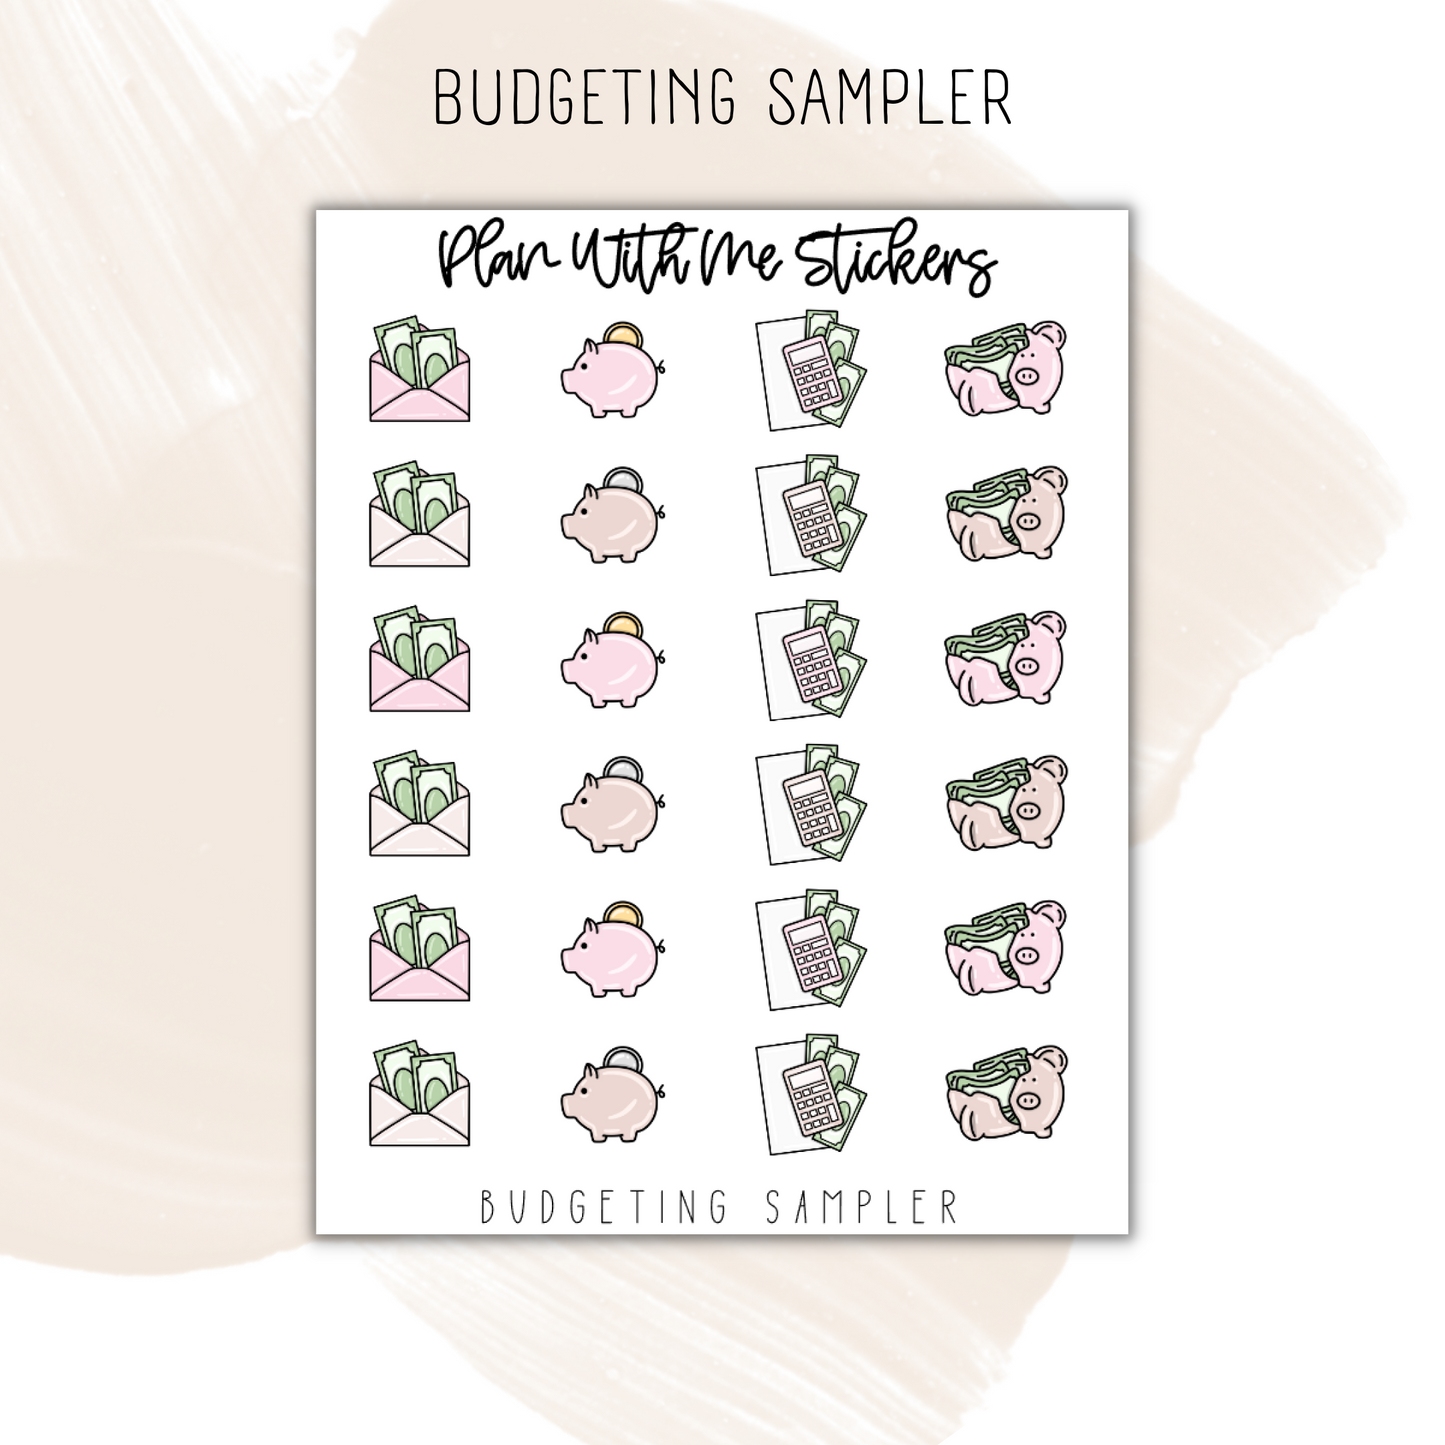 Budgeting Sampler | Doodles